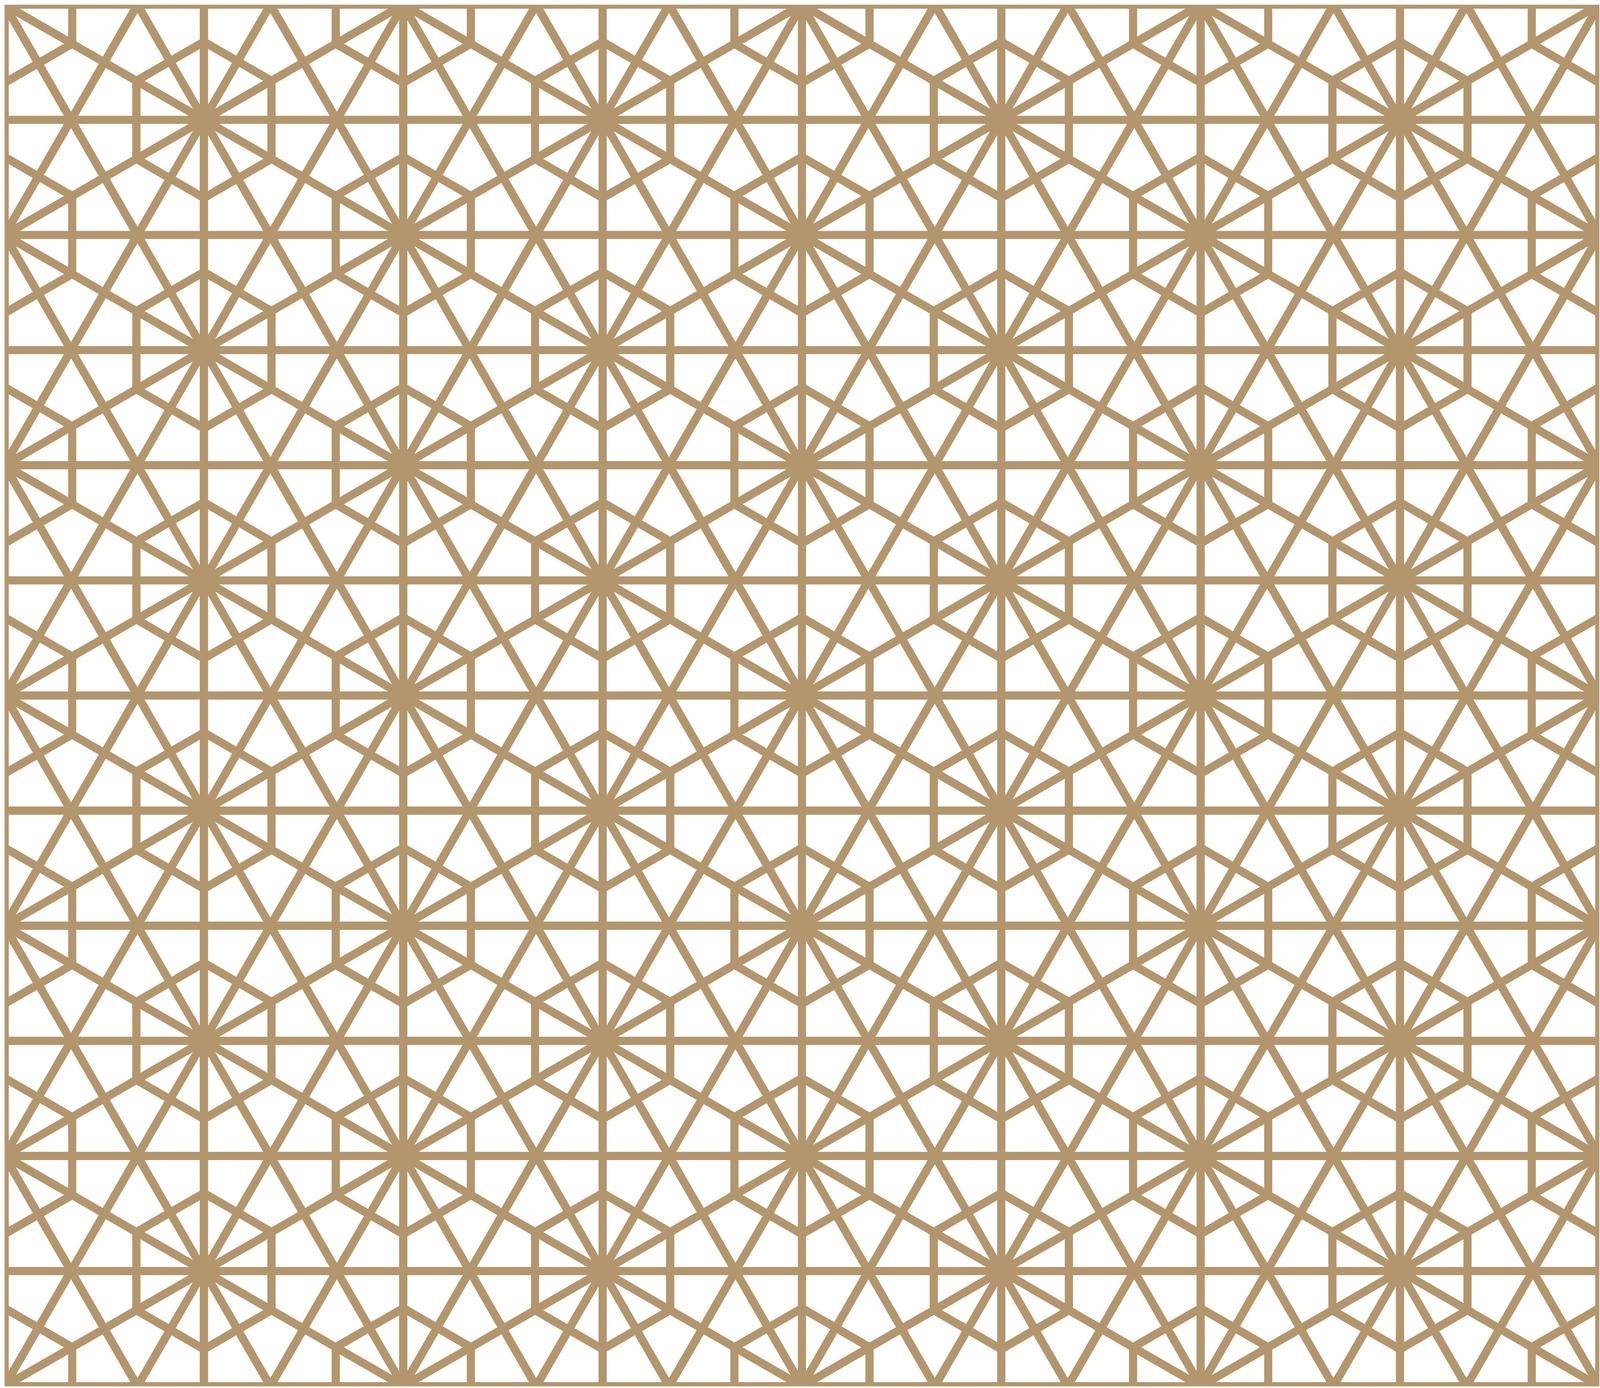 Seamless pattern based on Kumiko pattern by ALYOHA